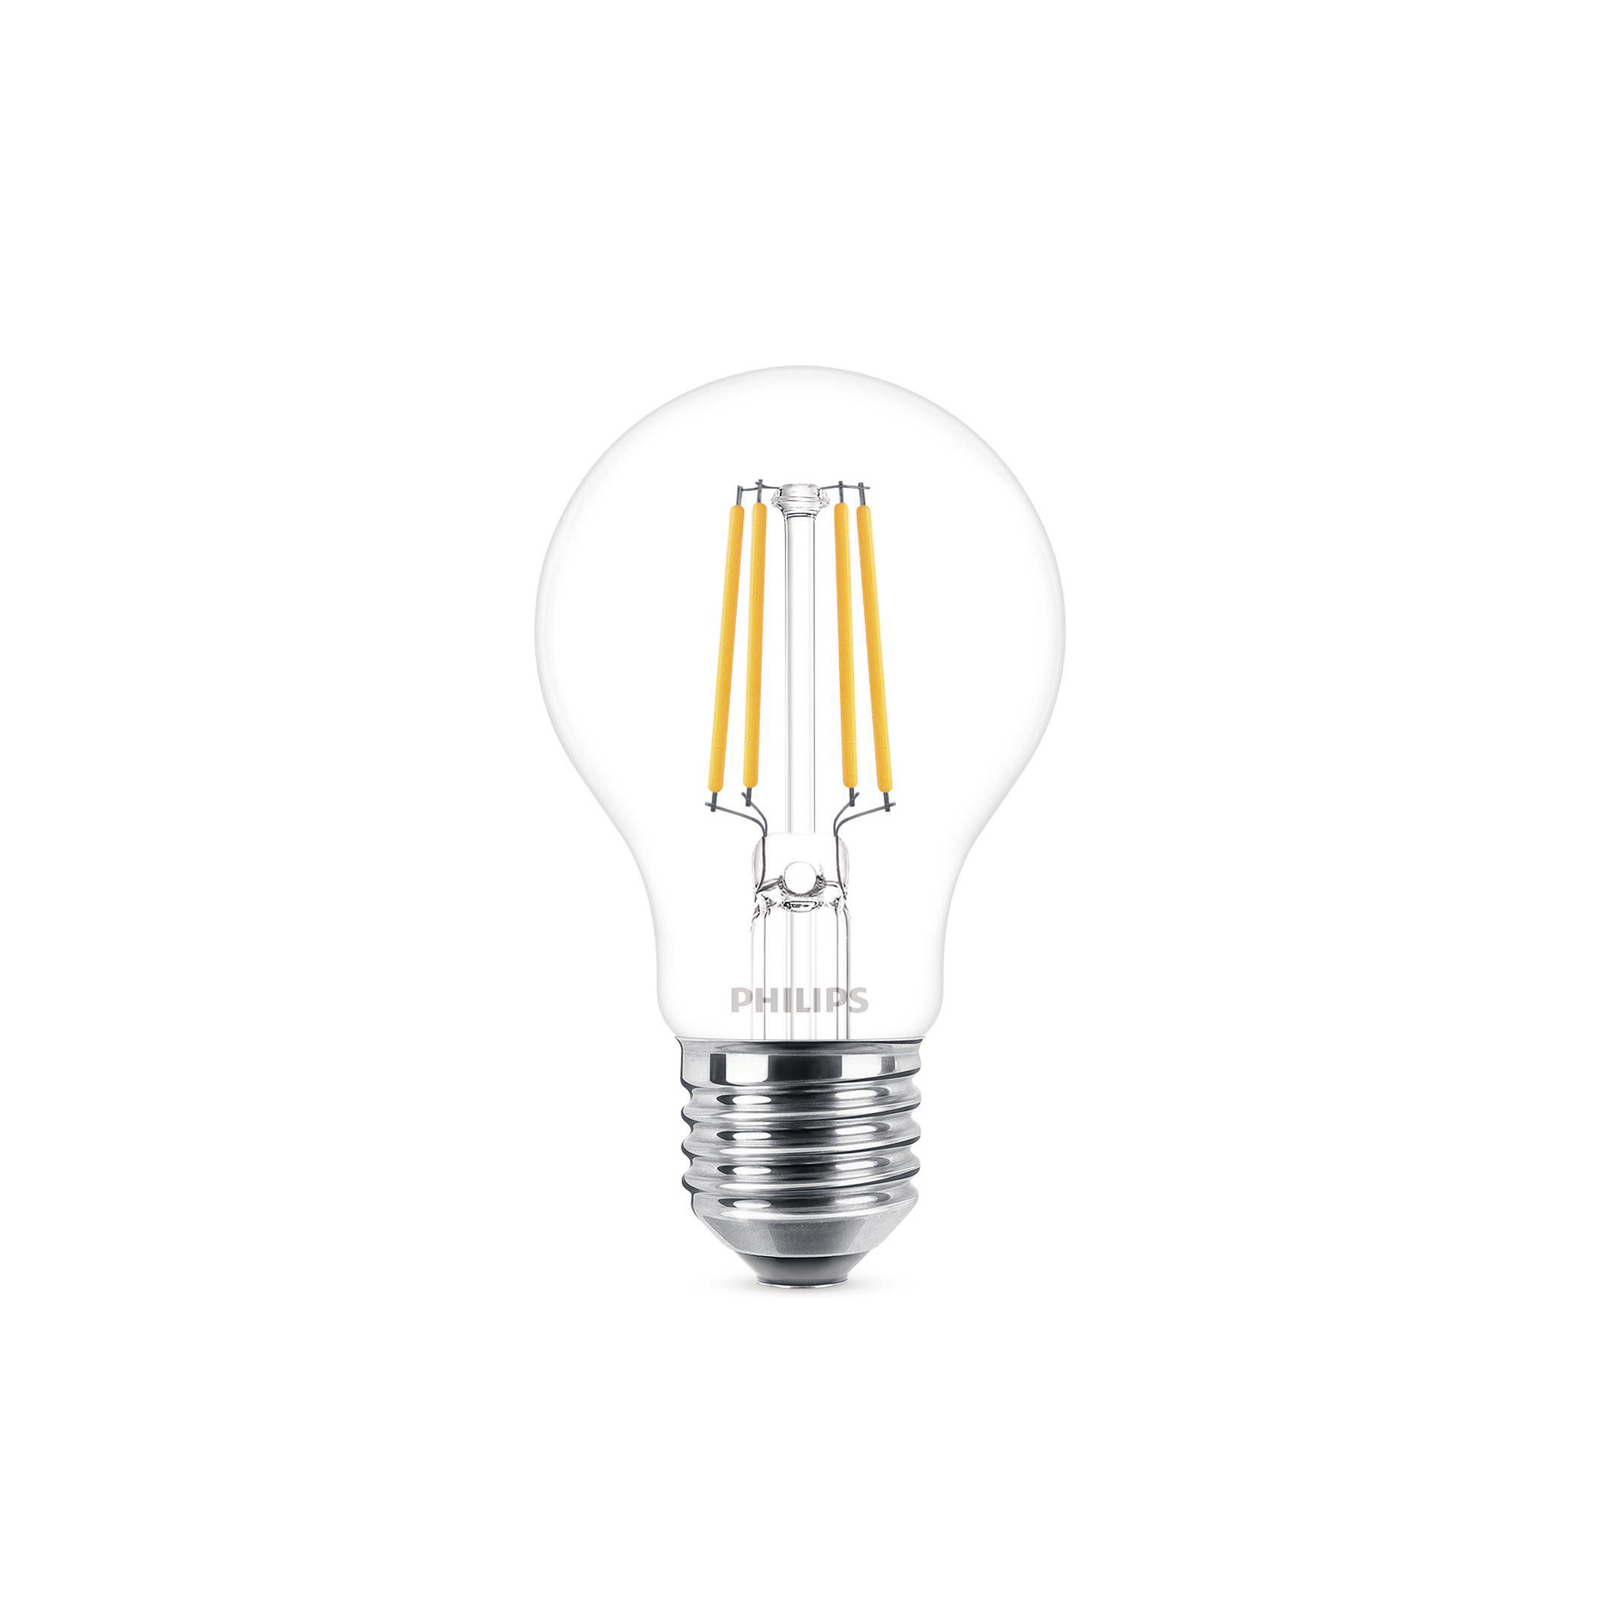 Philips LED bulb E27 4.3 W 2,700 K filament 2-pack